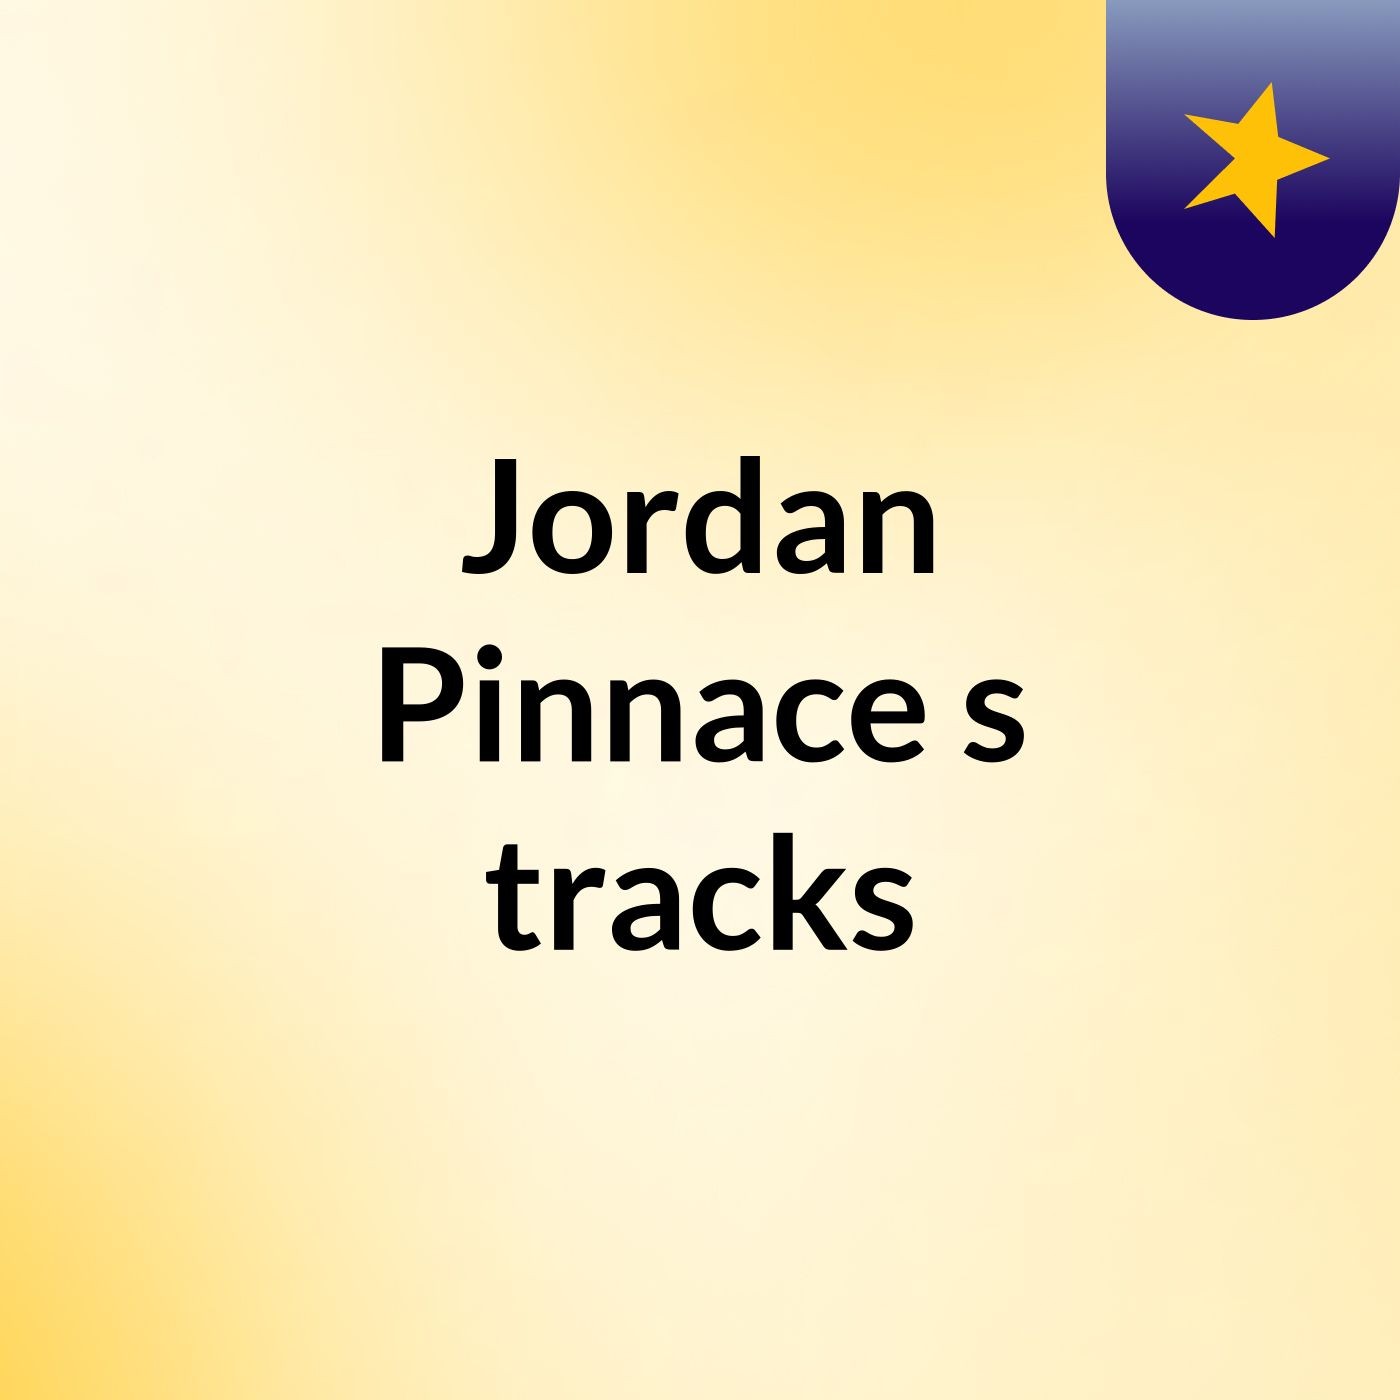 Jordan Pinnace's tracks